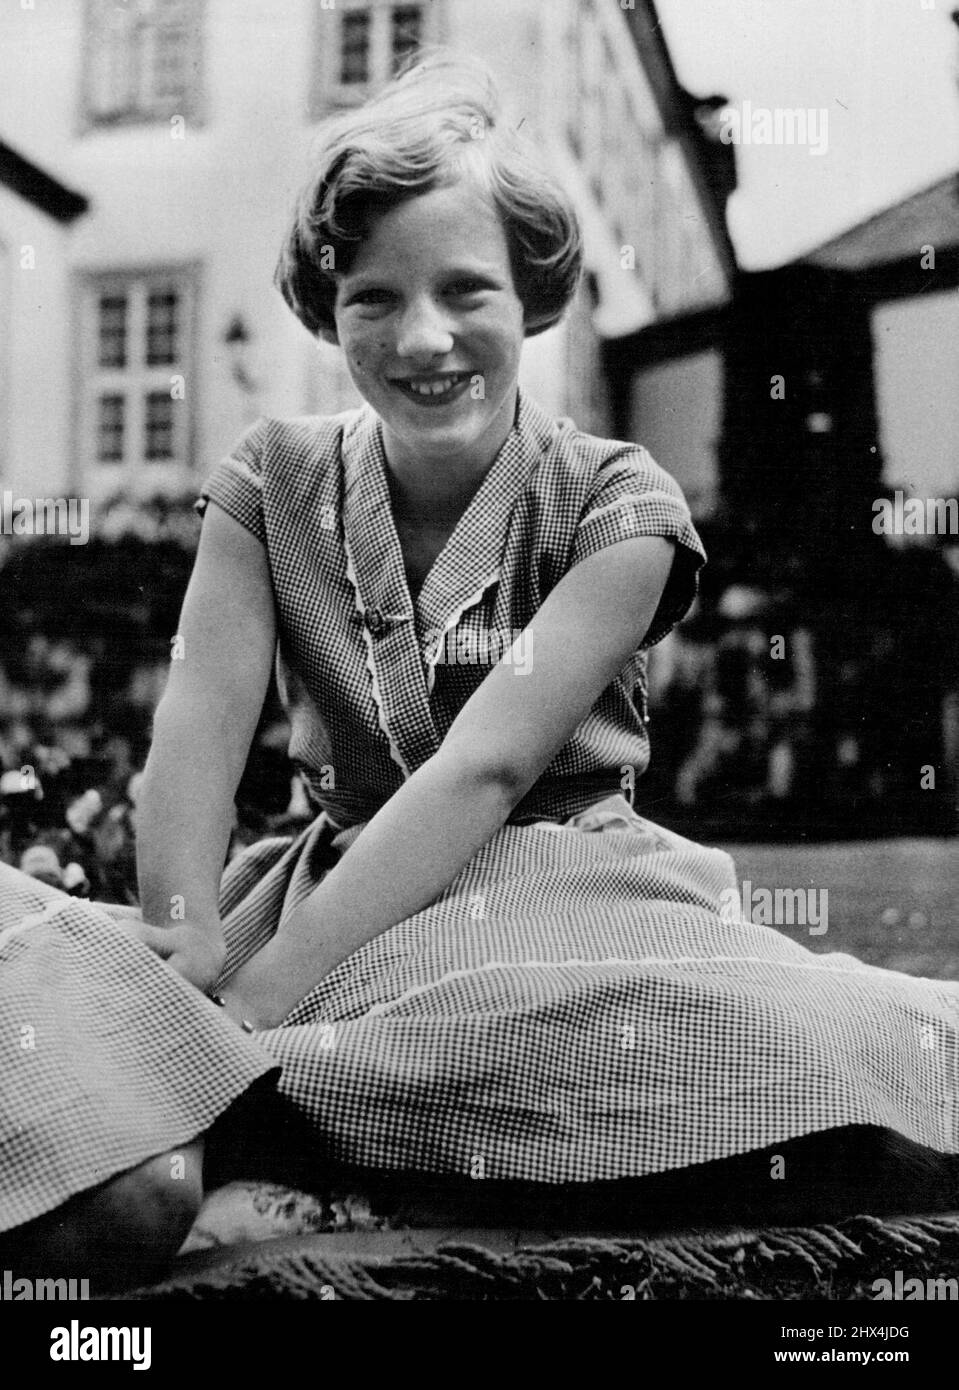 Héritier du trône du Danemark; la princesse Margrethe. Un nouveau portrait de la fille de 13 ans du roi Frederik et de la reine Ingrid du Danemark. 1 juin 1953. (Photo d'Inga Aistrup, Camera Press). Banque D'Images